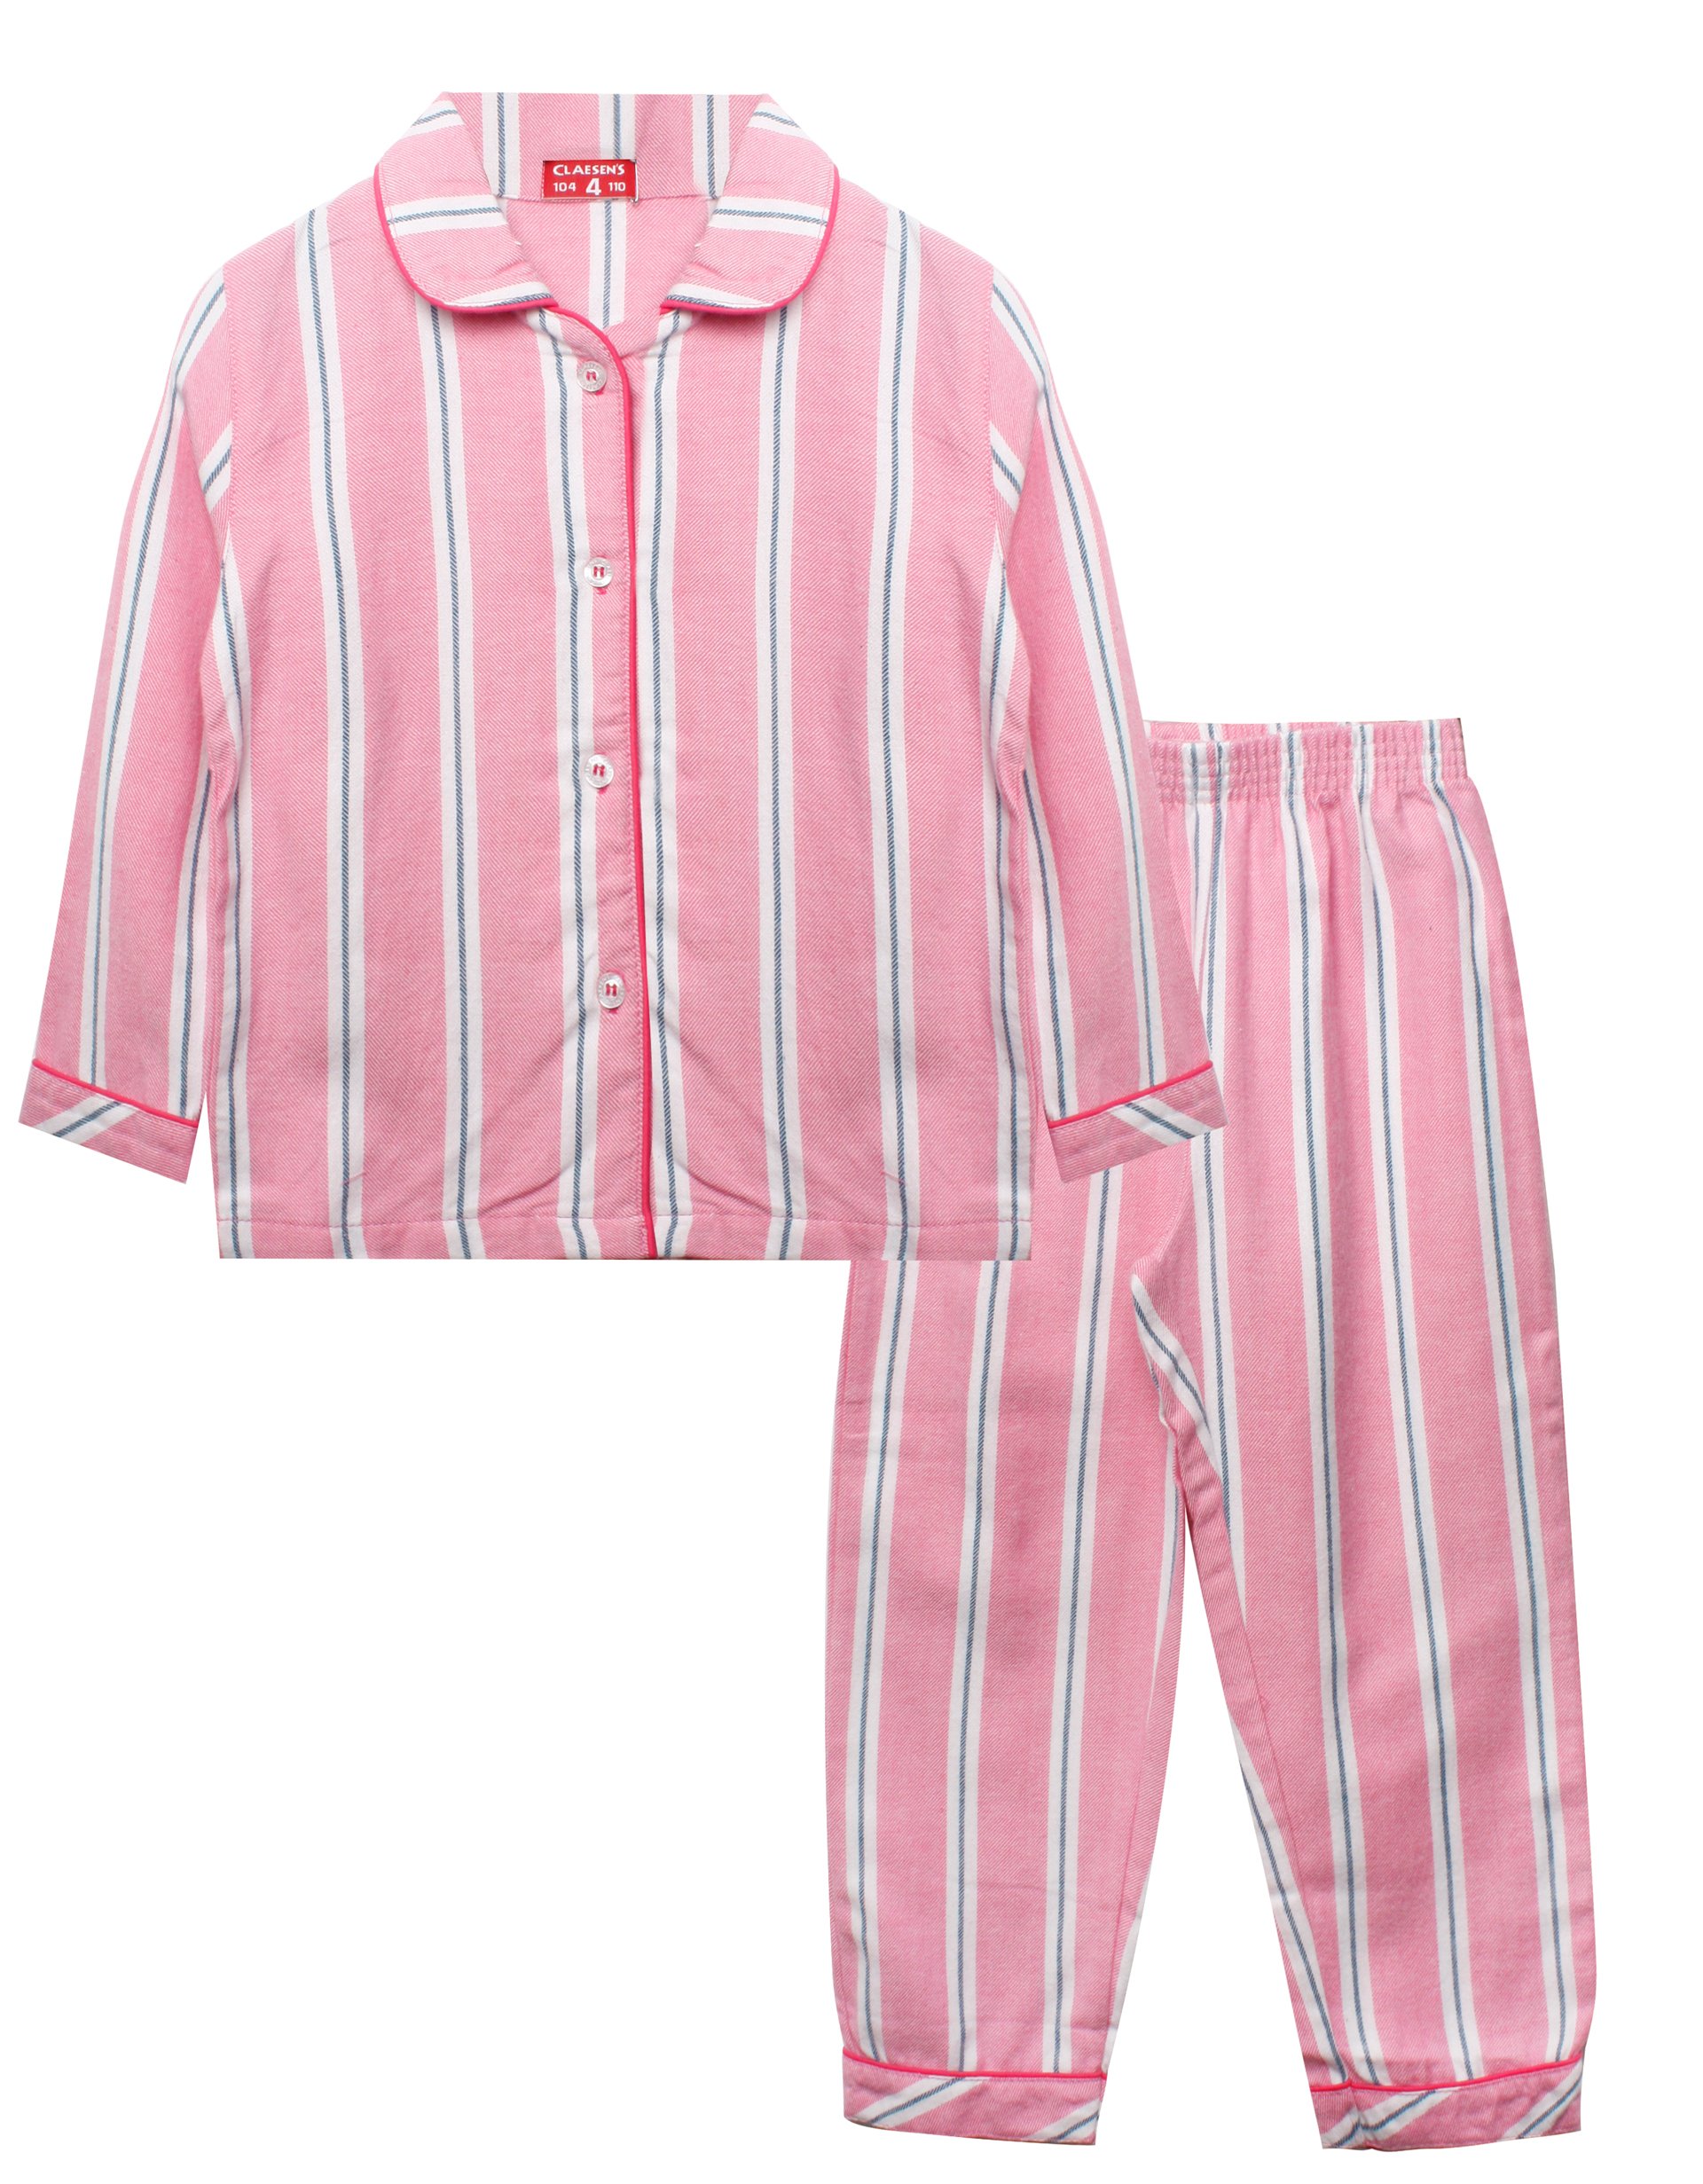 Girls Flannel Pyjama